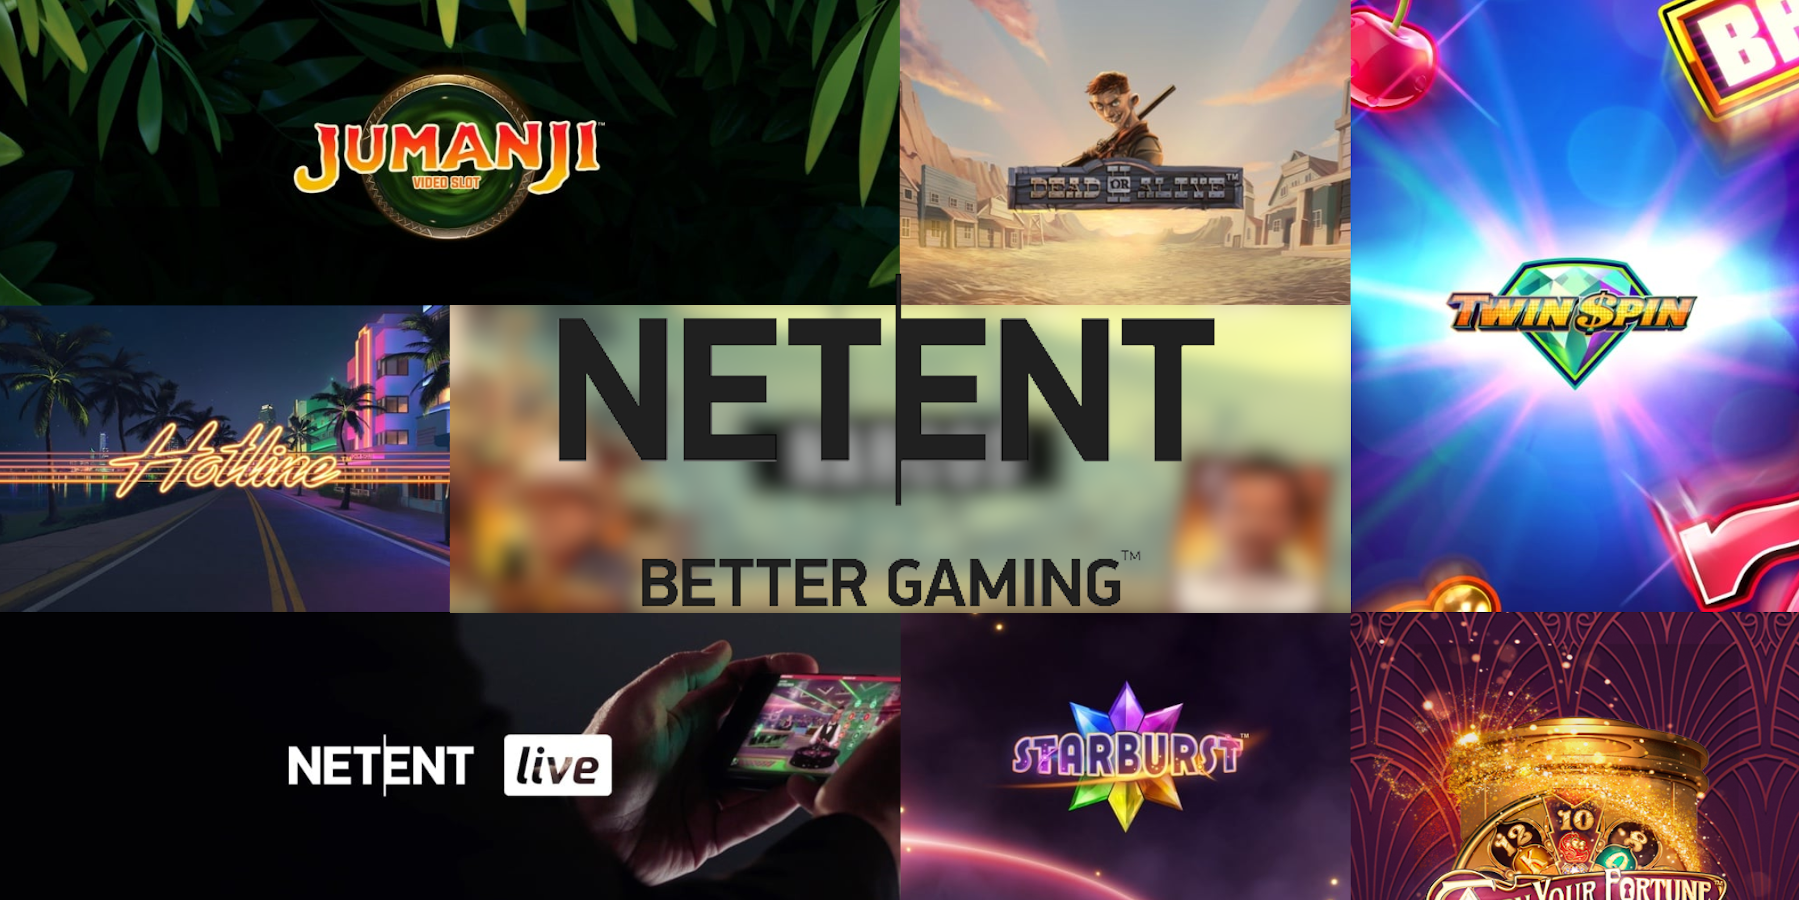 NetEnt casino's